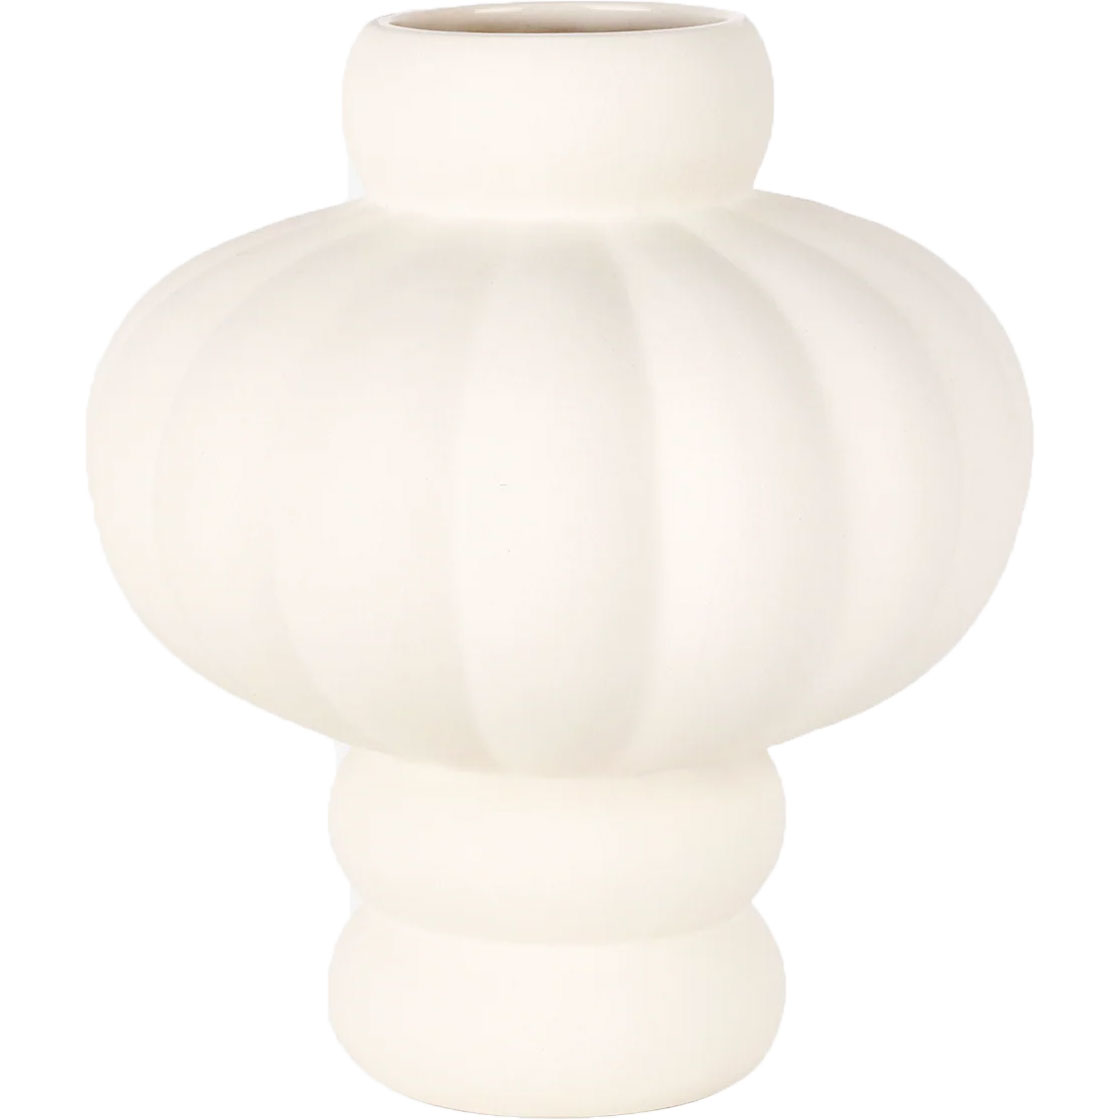 Balloon 02 Vase 20 cm, Raw White